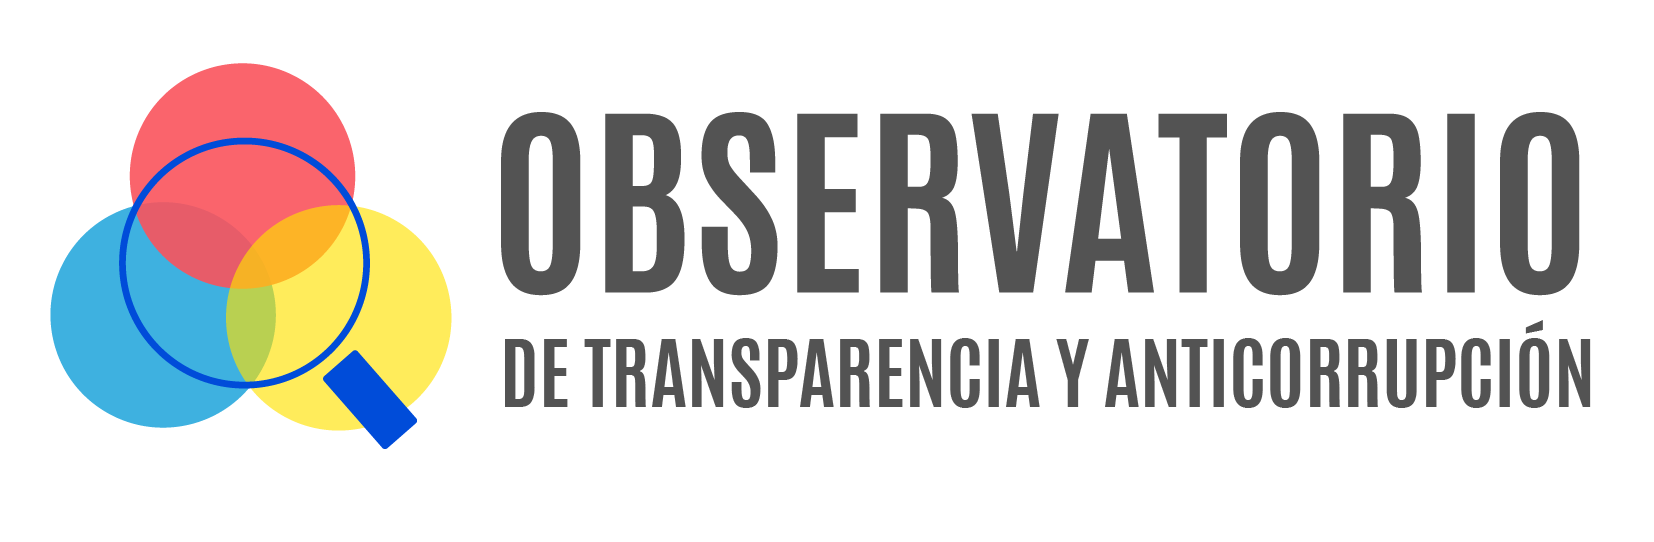 brand_Observatorio de transparencia y anticorrupción 